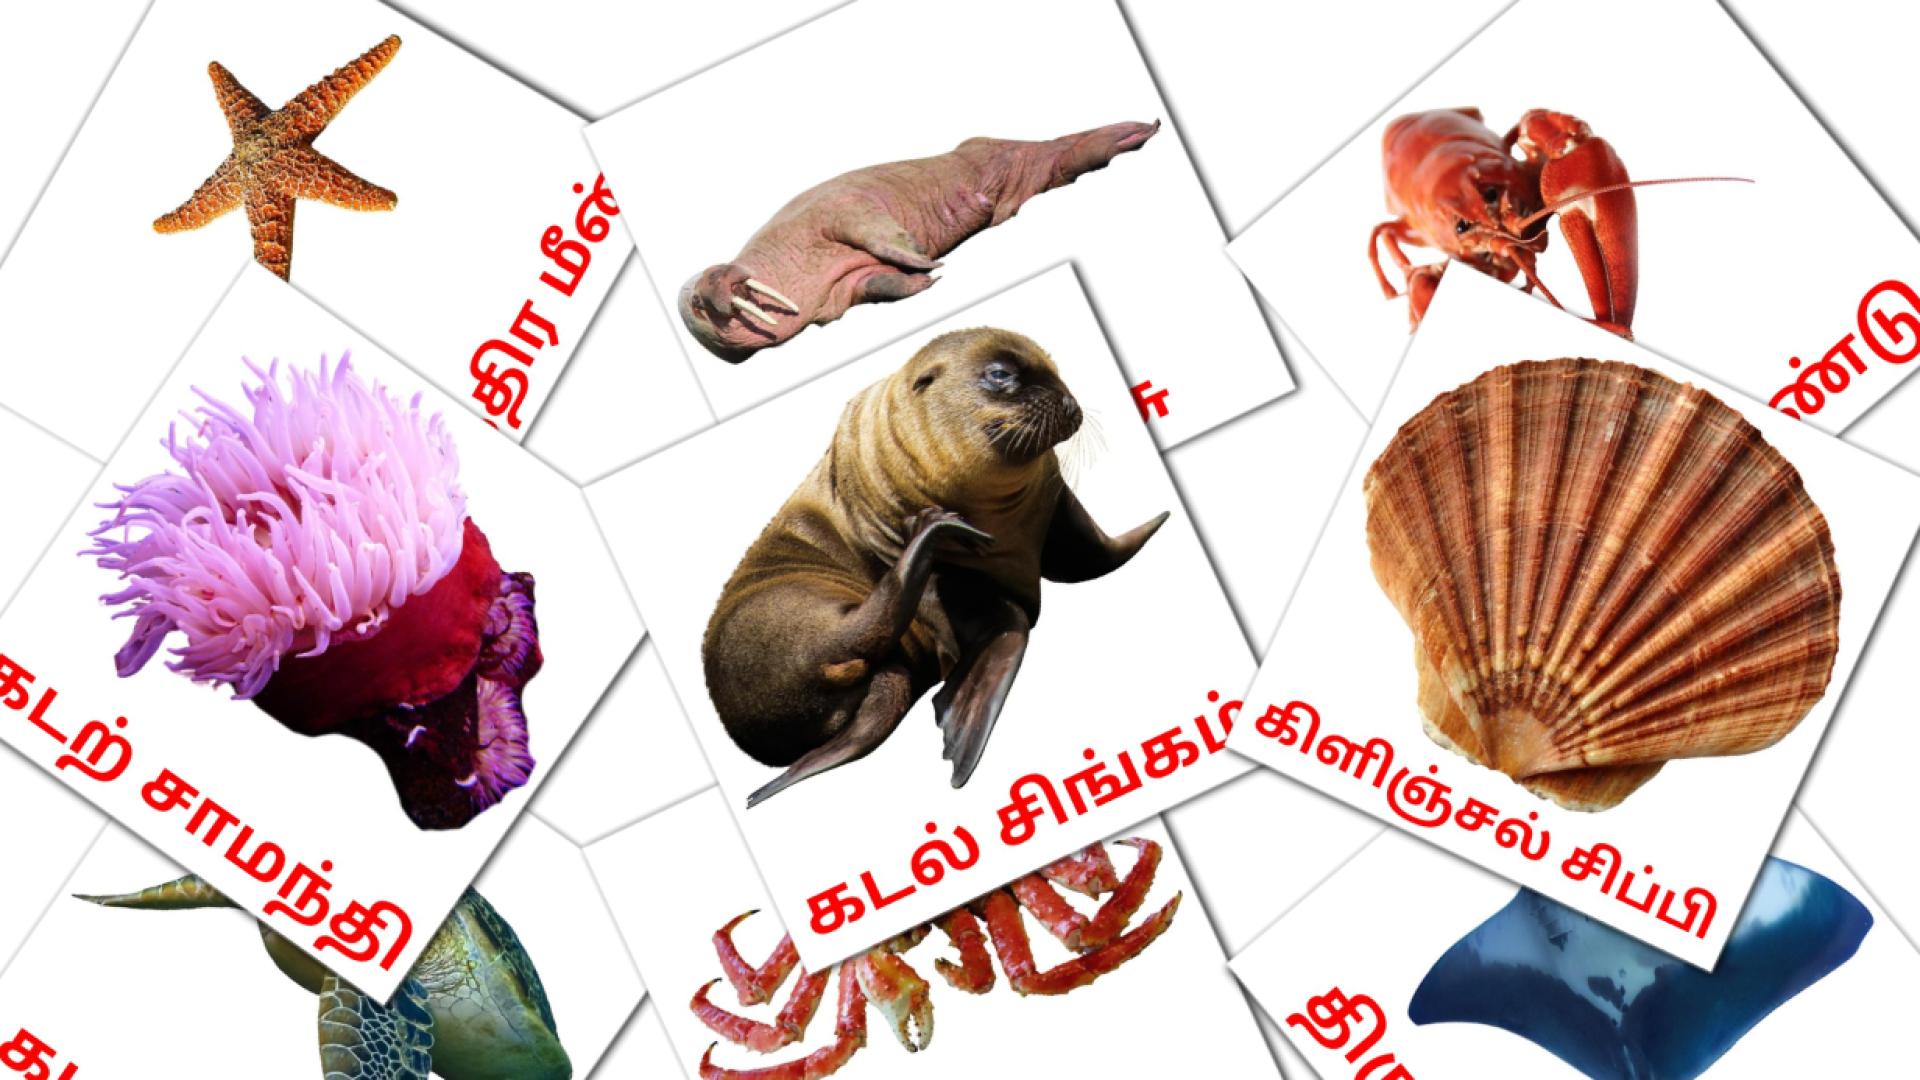 29 Bildkarten für கடல் வாழ் விலங்குகள்